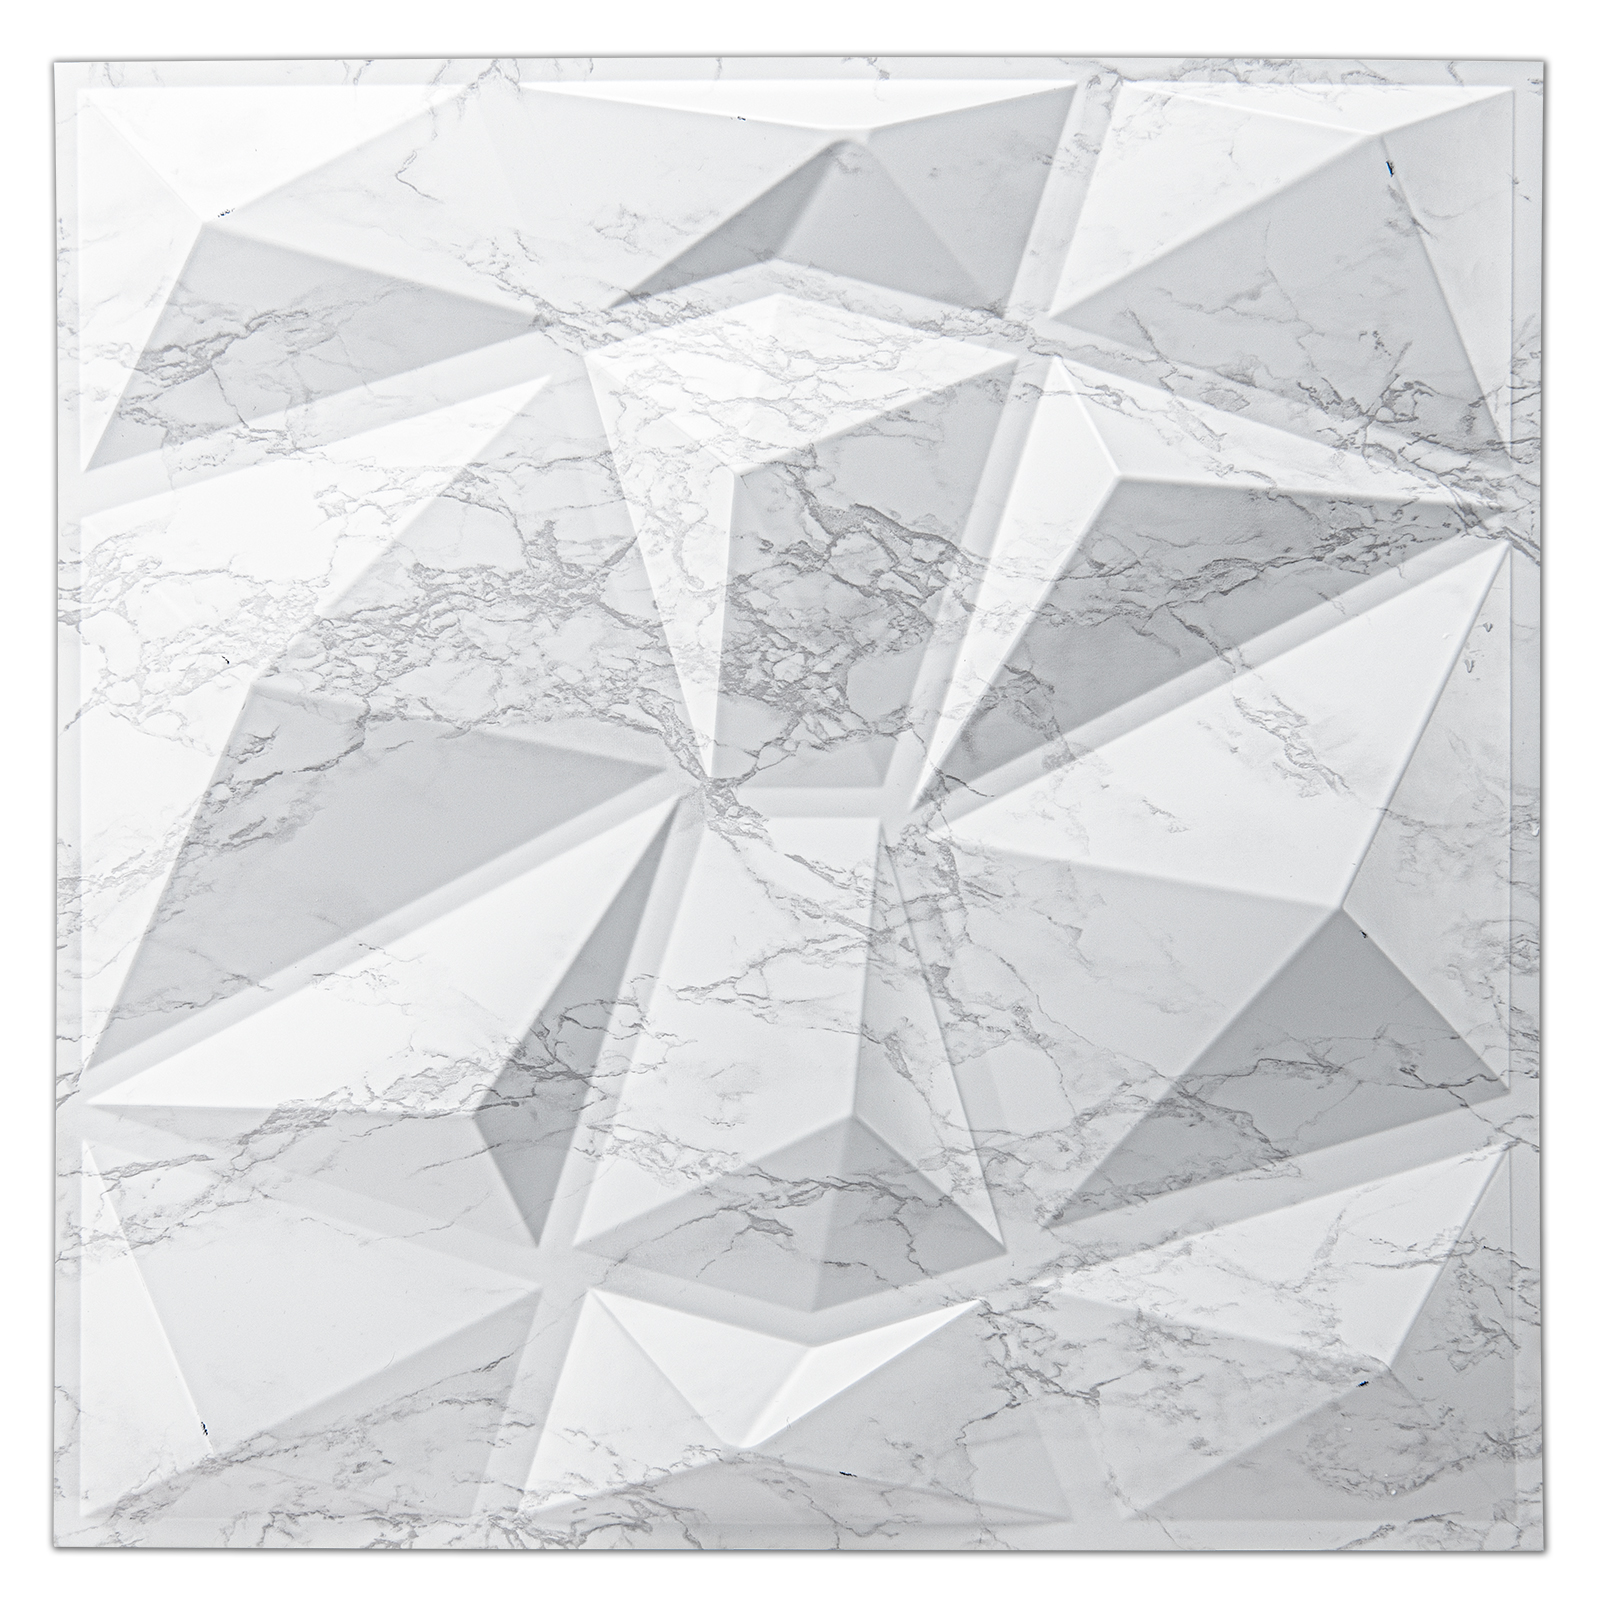 Art3d Geometric Rectangle 30 in. x 18 in. Rubber Foam Anti-Slip